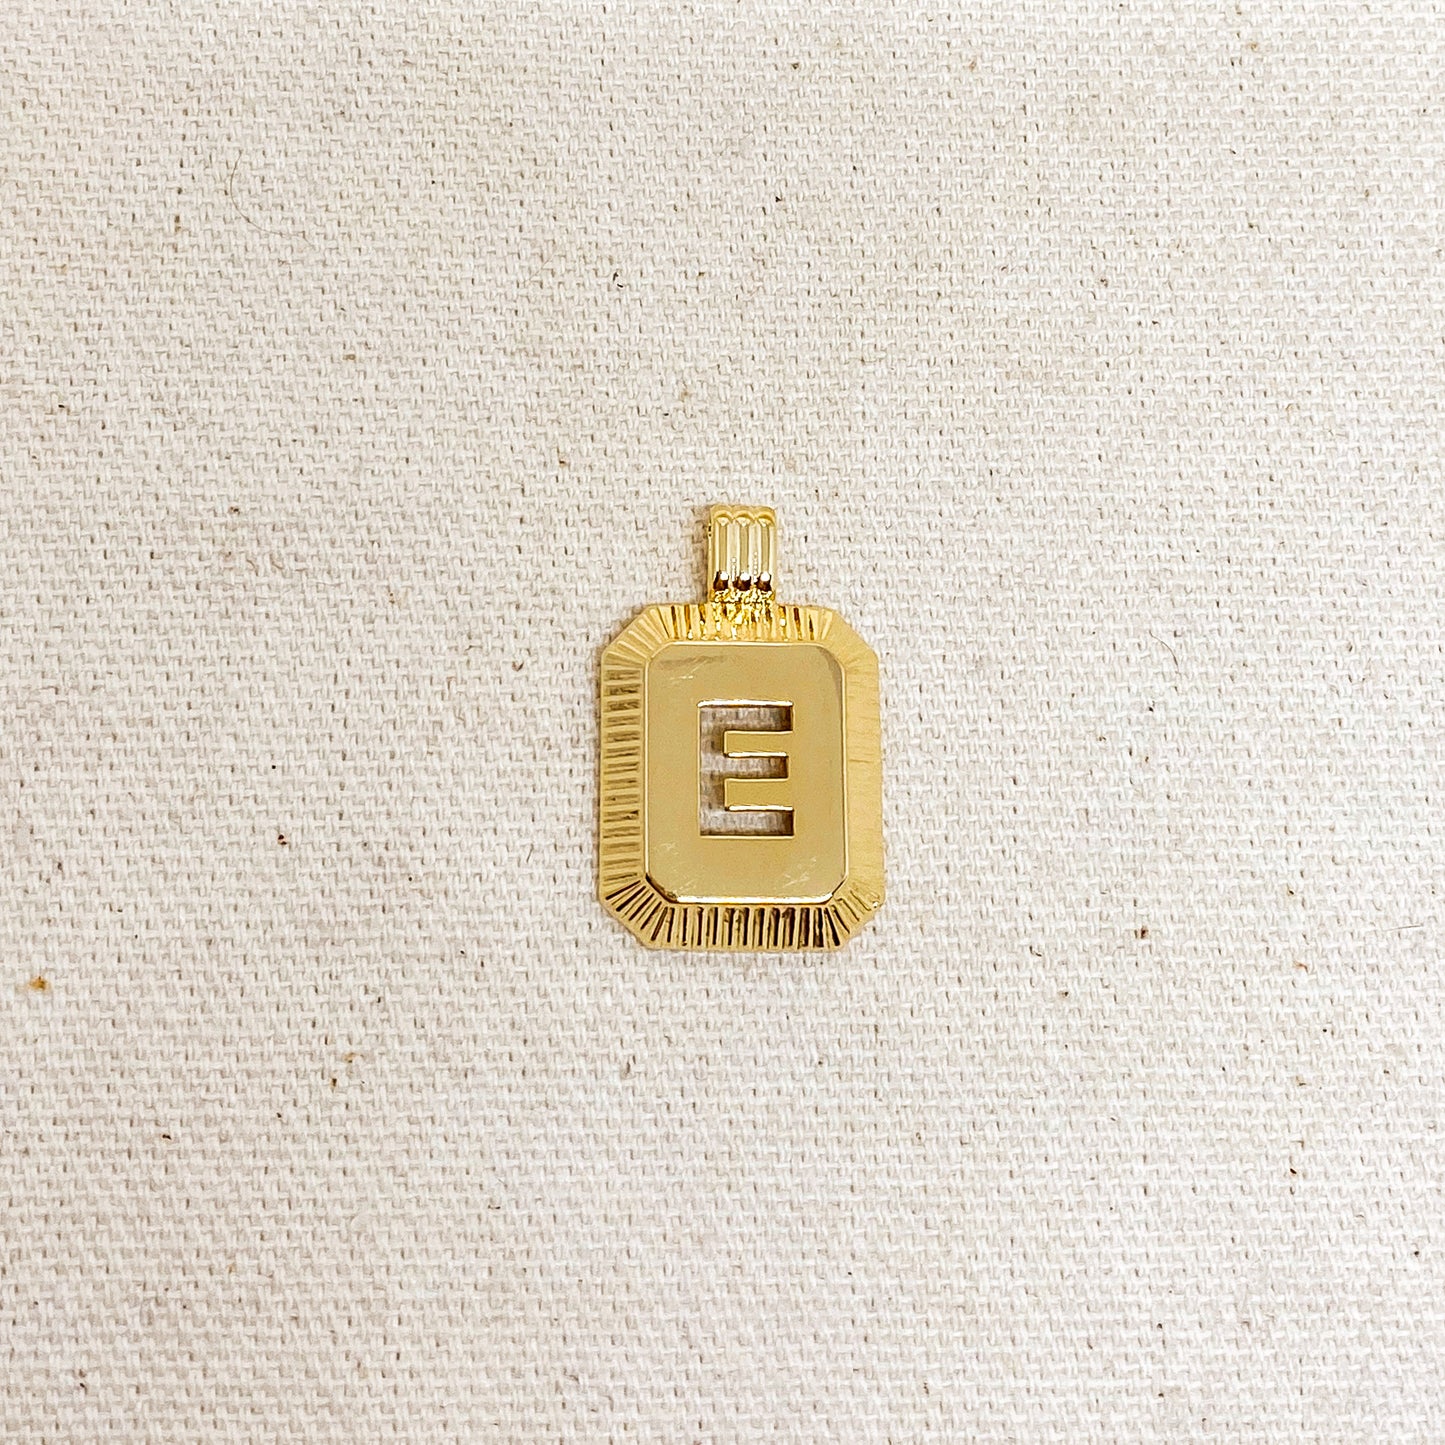 GoldFi 18k Gold Filled Initial Plate Pendant Letter E